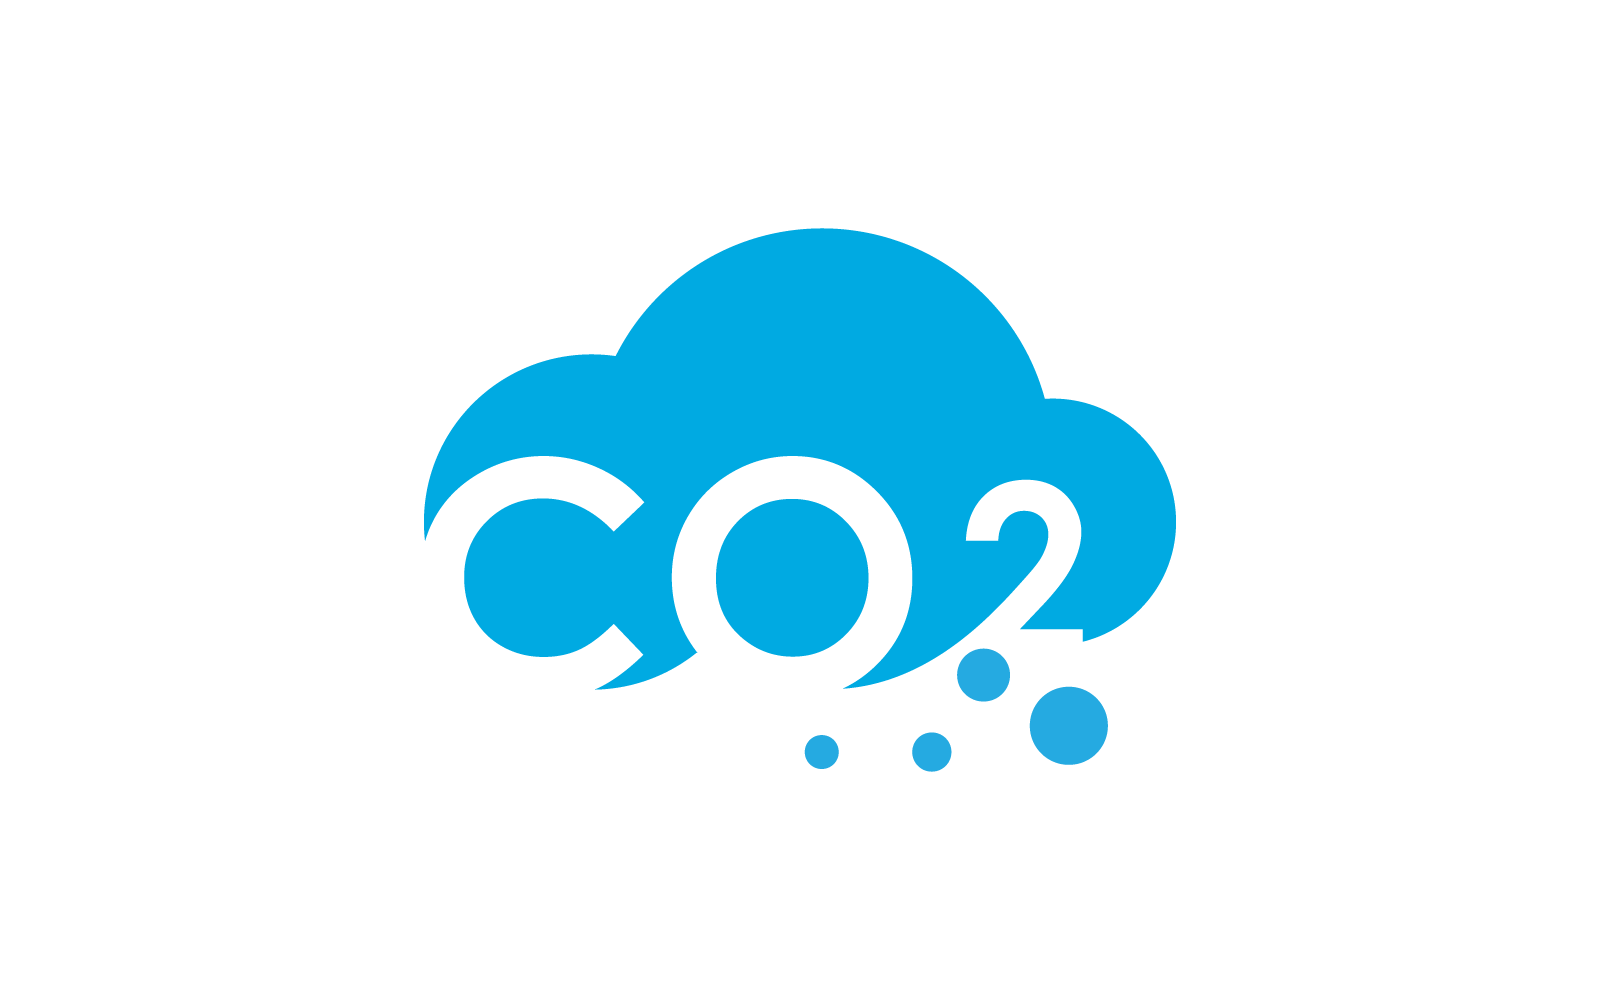 Co2 Carbon dioxide logo illustration design Logo Template